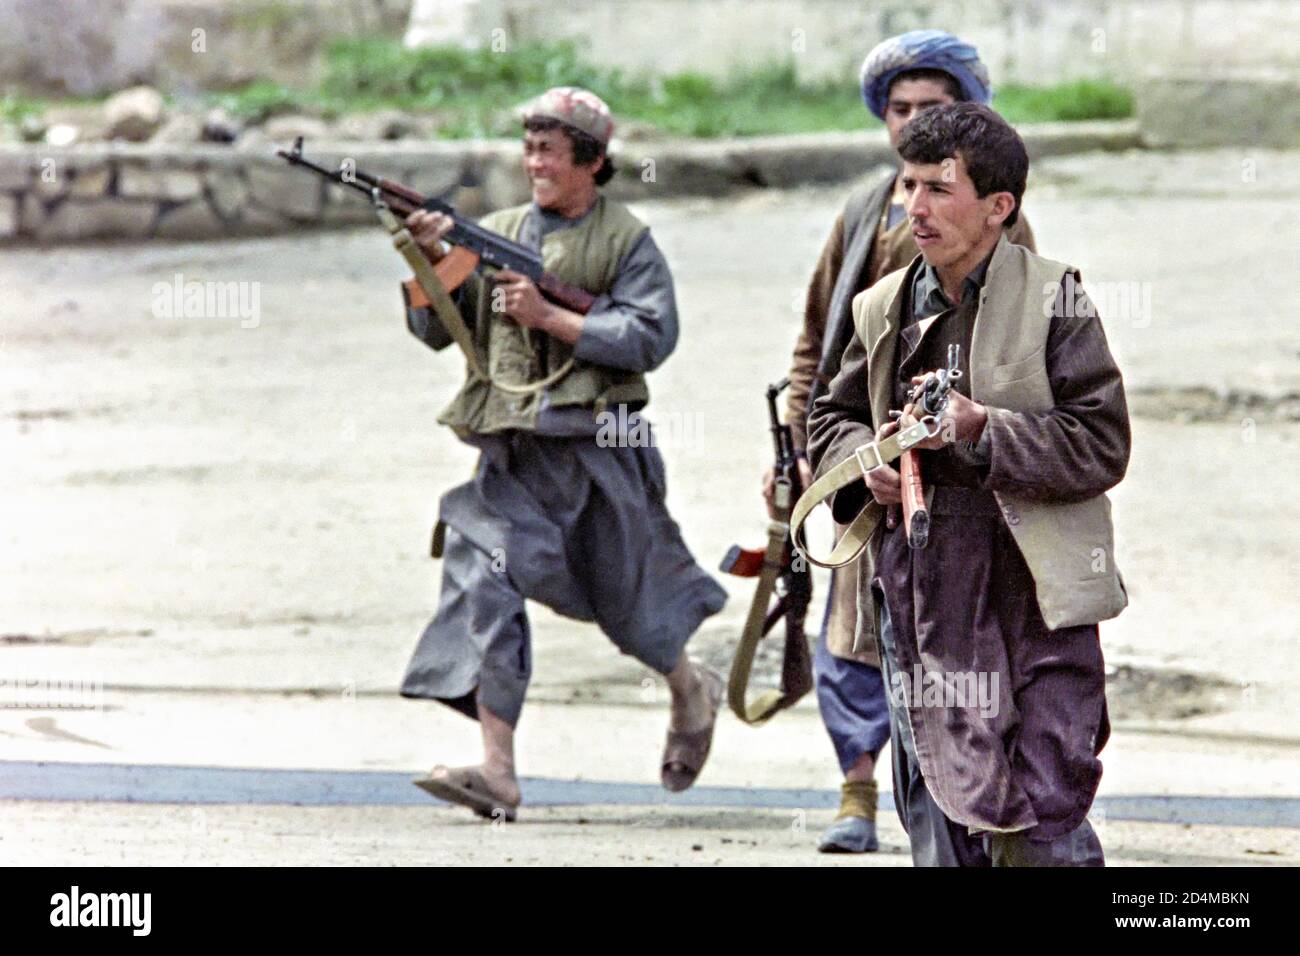 Combattente guerriglia afghano mujahideen con il fuoco di Jamiat-e Islami sovietico ha fatto AK-47 mitragliatrici alle forze ribelli guidate da Hezb-e Islami 22 aprile 1992 a Kabul, Afghanistan. Dopo la sconfitta del governo comunista, i ribelli afghani iniziarono a lottare per il controllo della capitale. Foto Stock